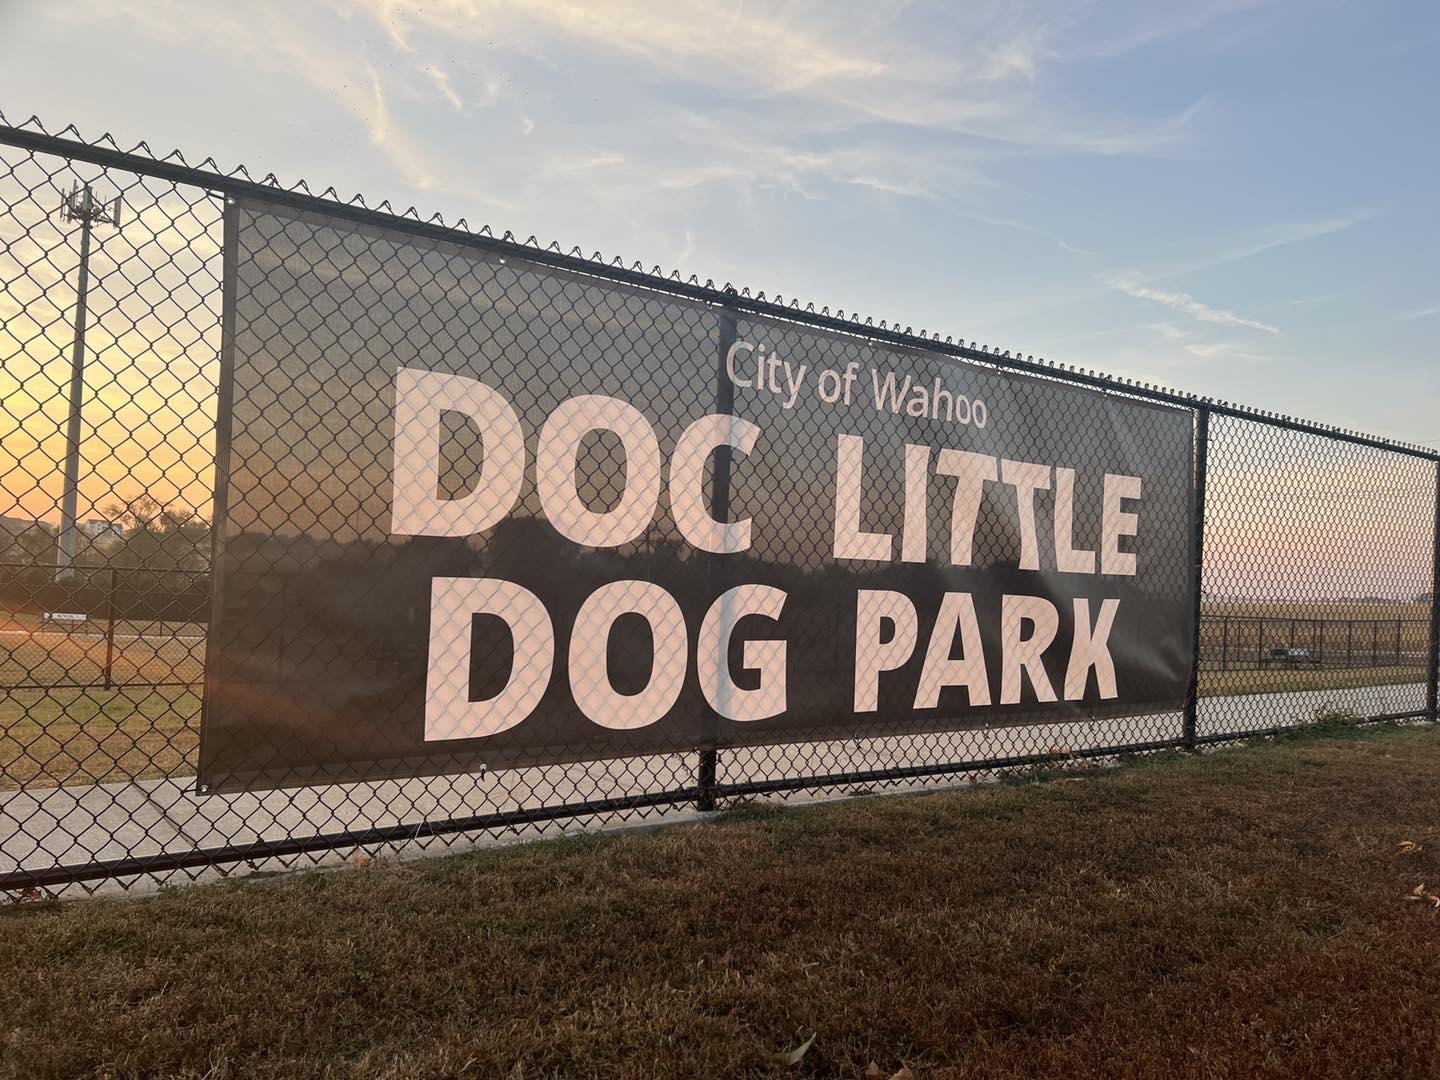 Pet Friendly Doc Little Dog Park